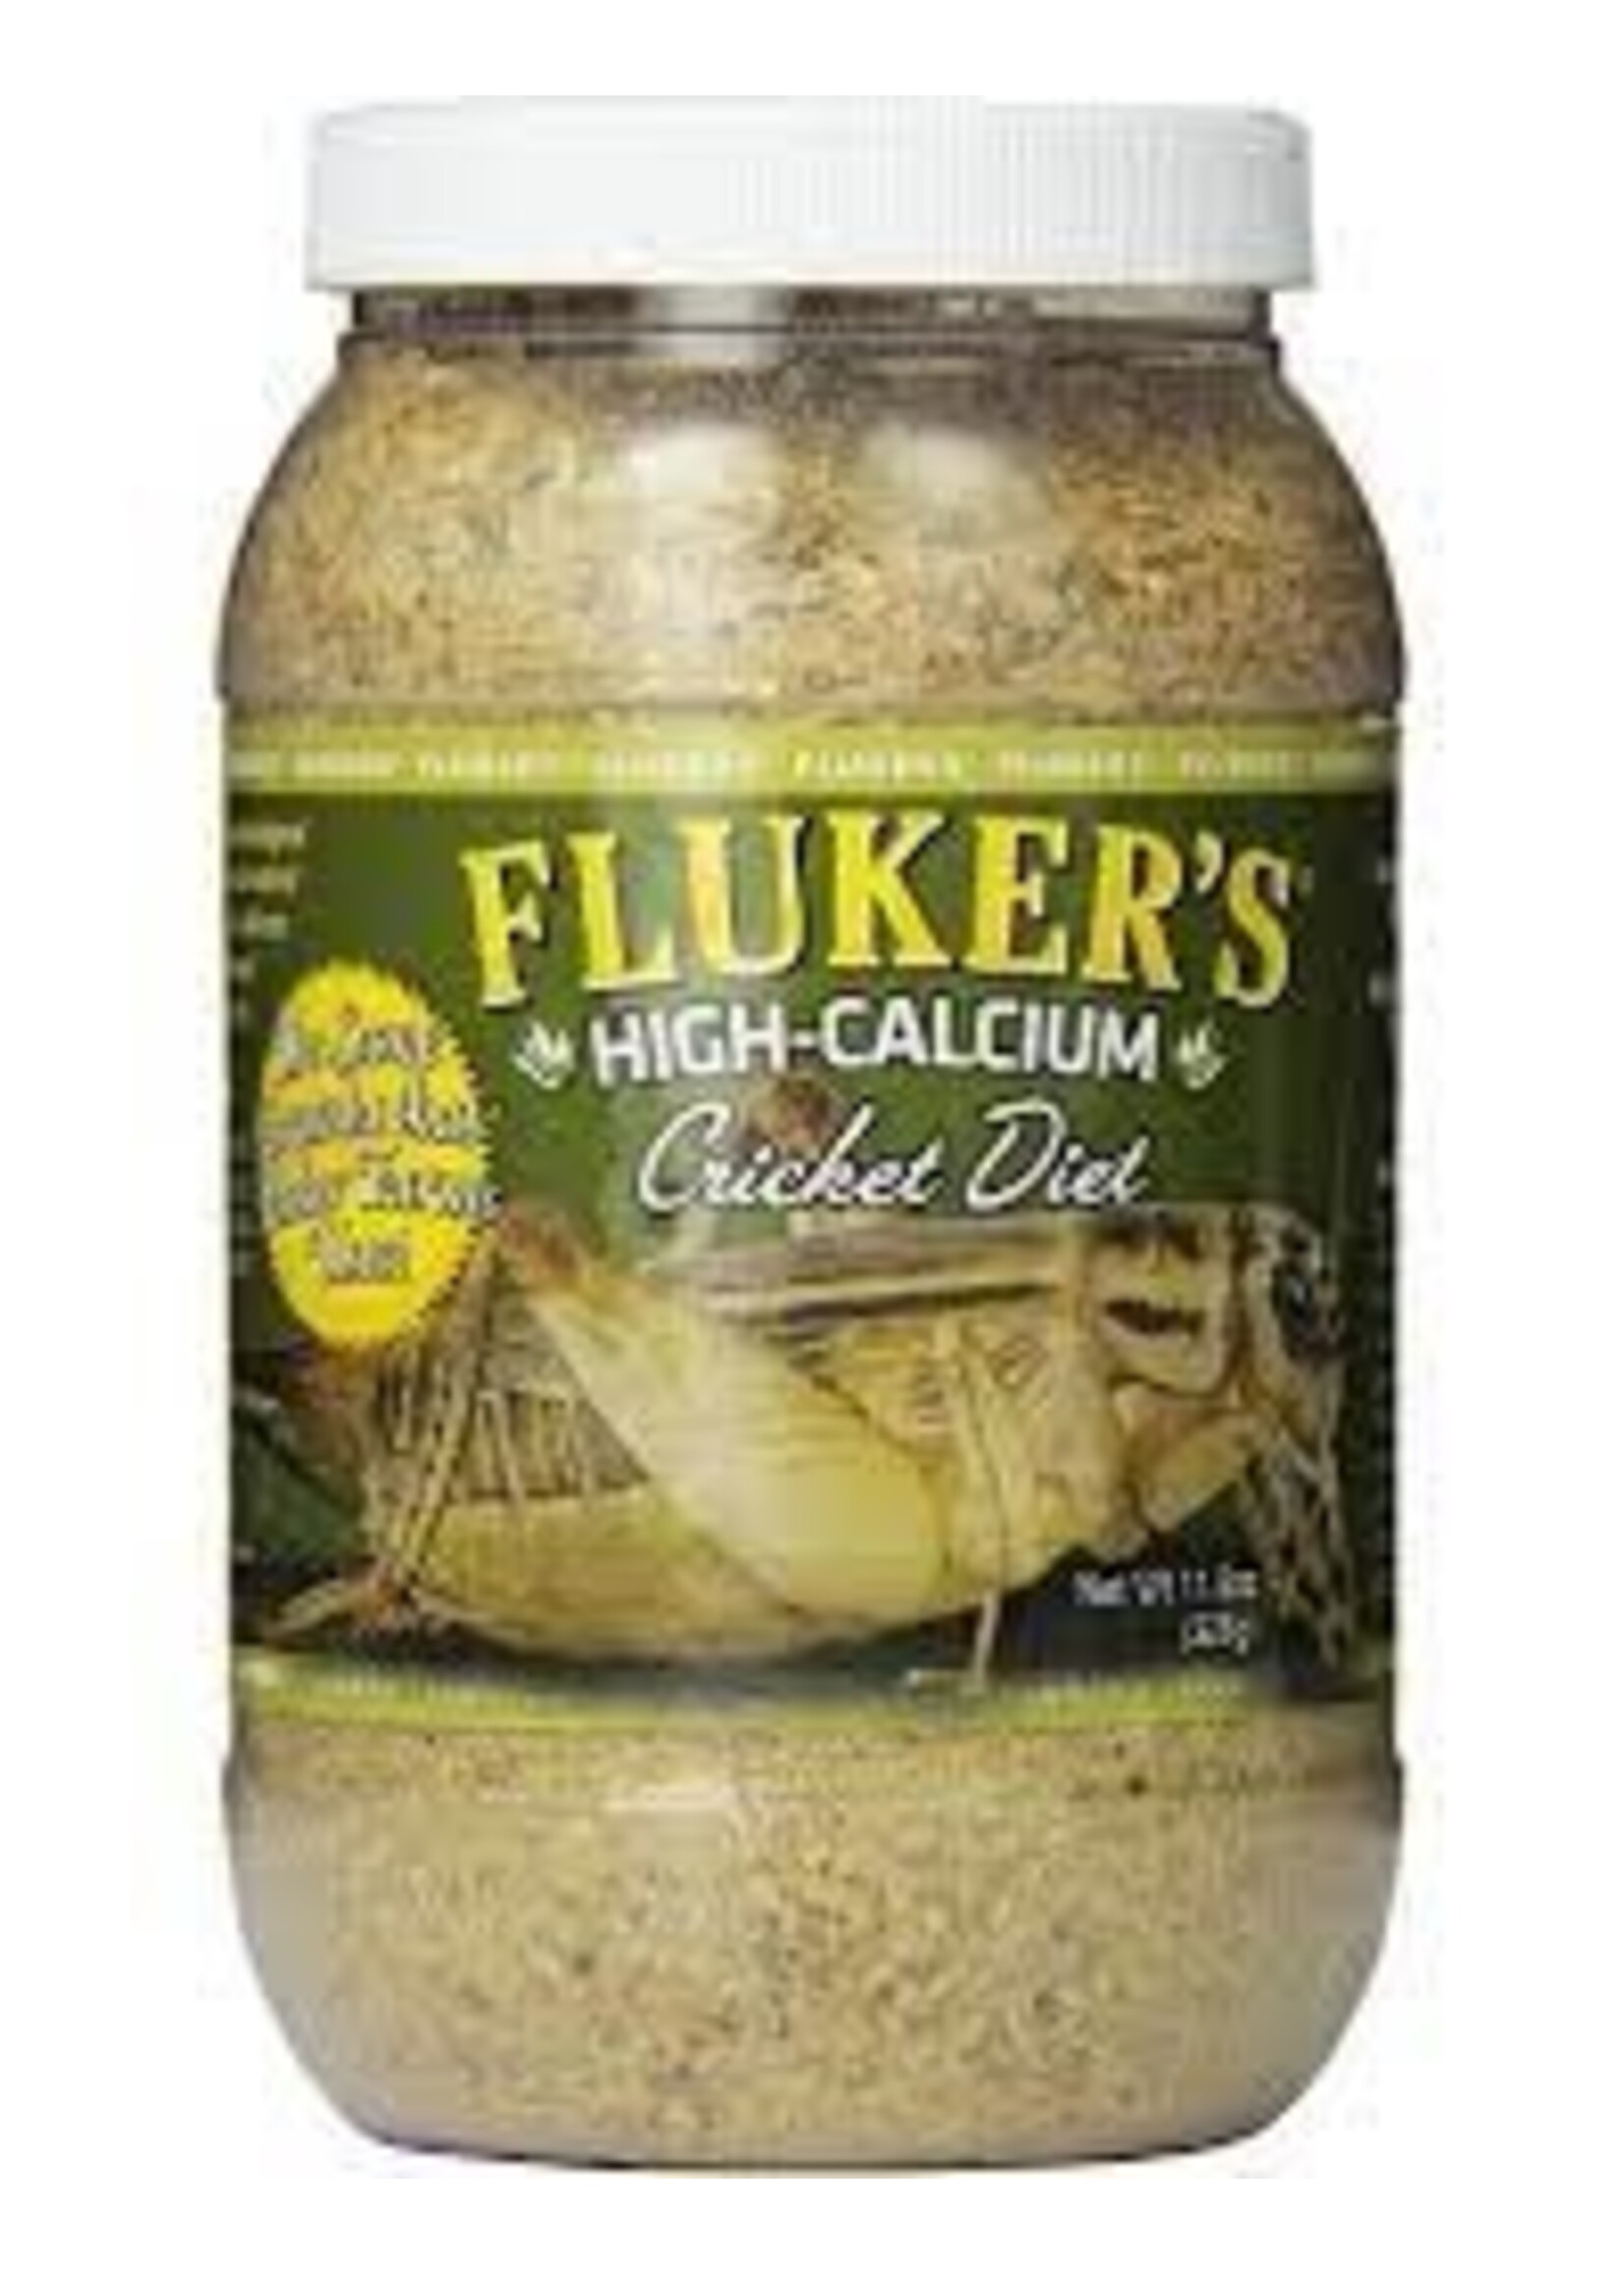 Flukers Fluker's Hi-Calcium Cricket Diet 11.5oz